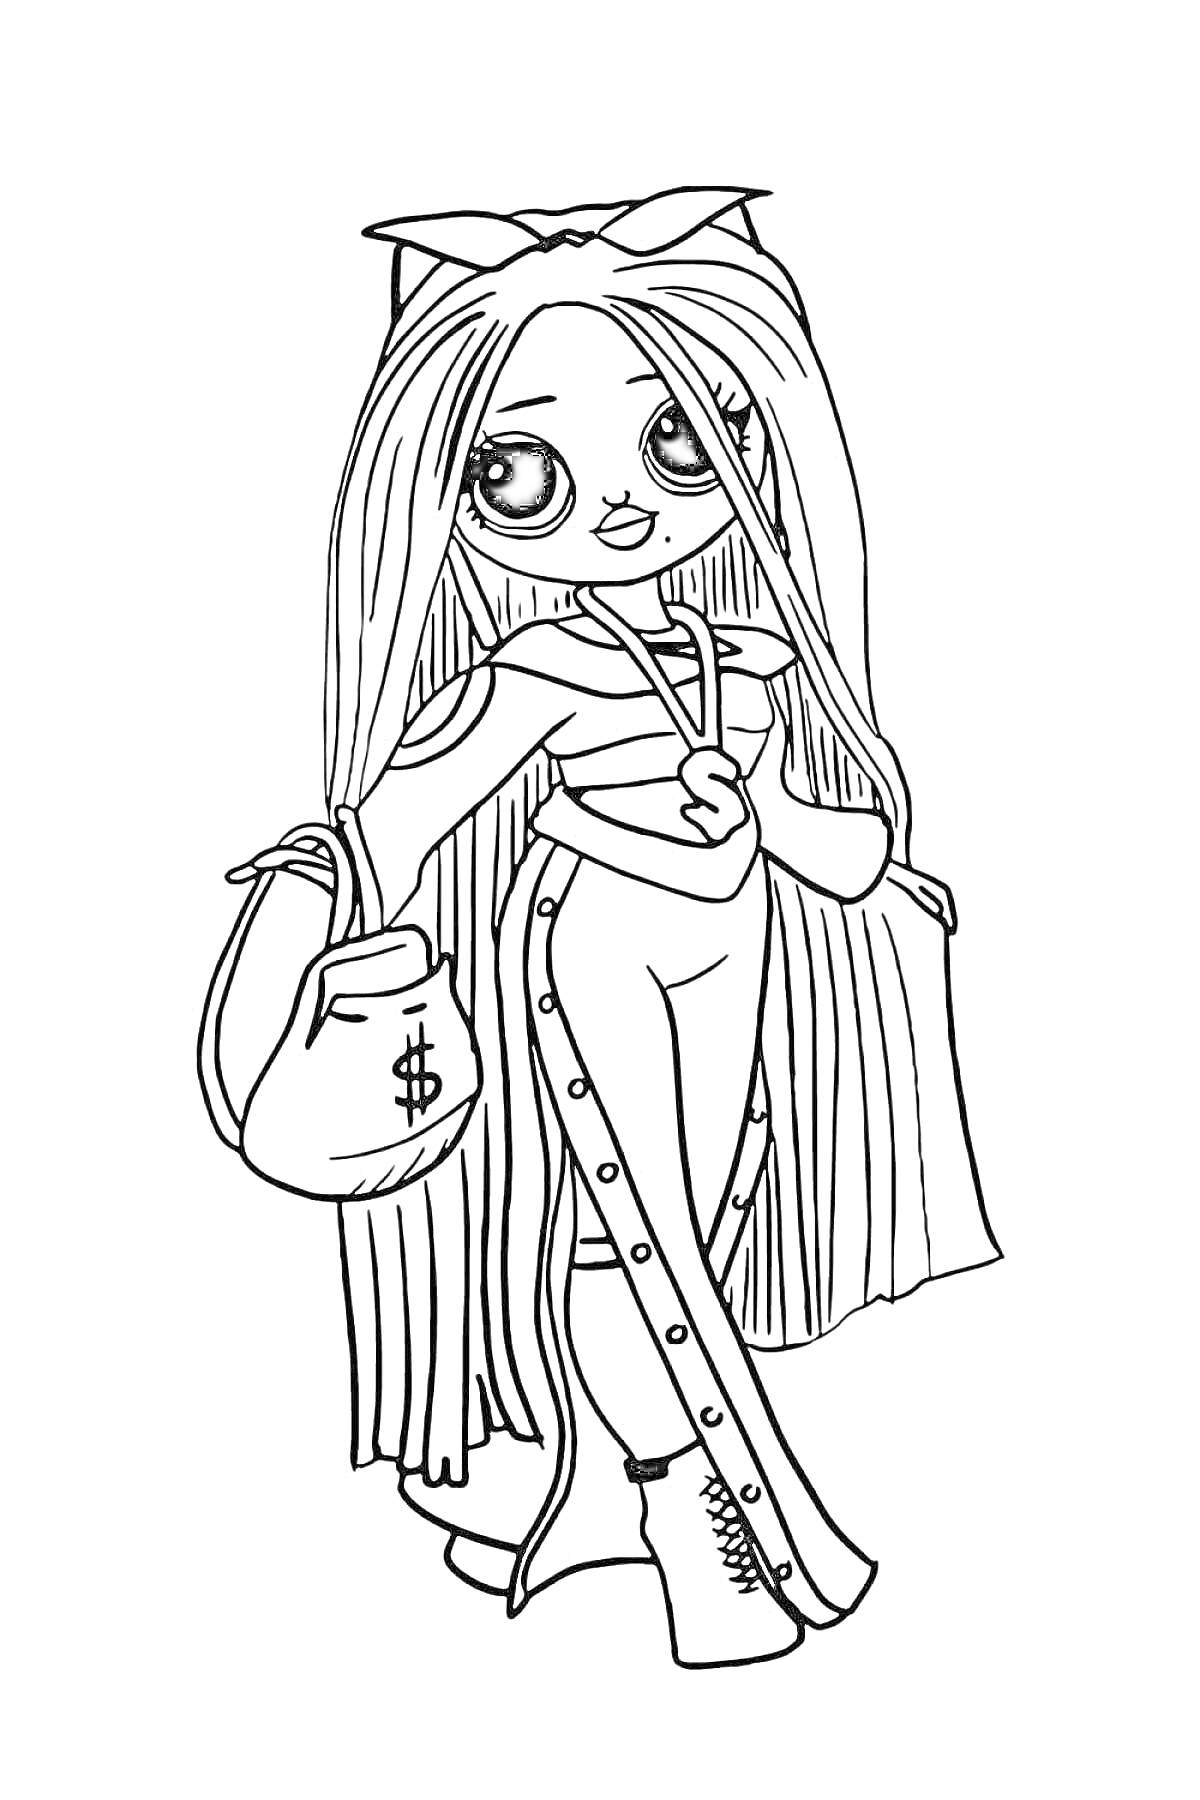 Раскраска Большая кукла ЛОЛ с длинными волосами, сумкой с символом доллара, в костюме с кнопками и ботинках